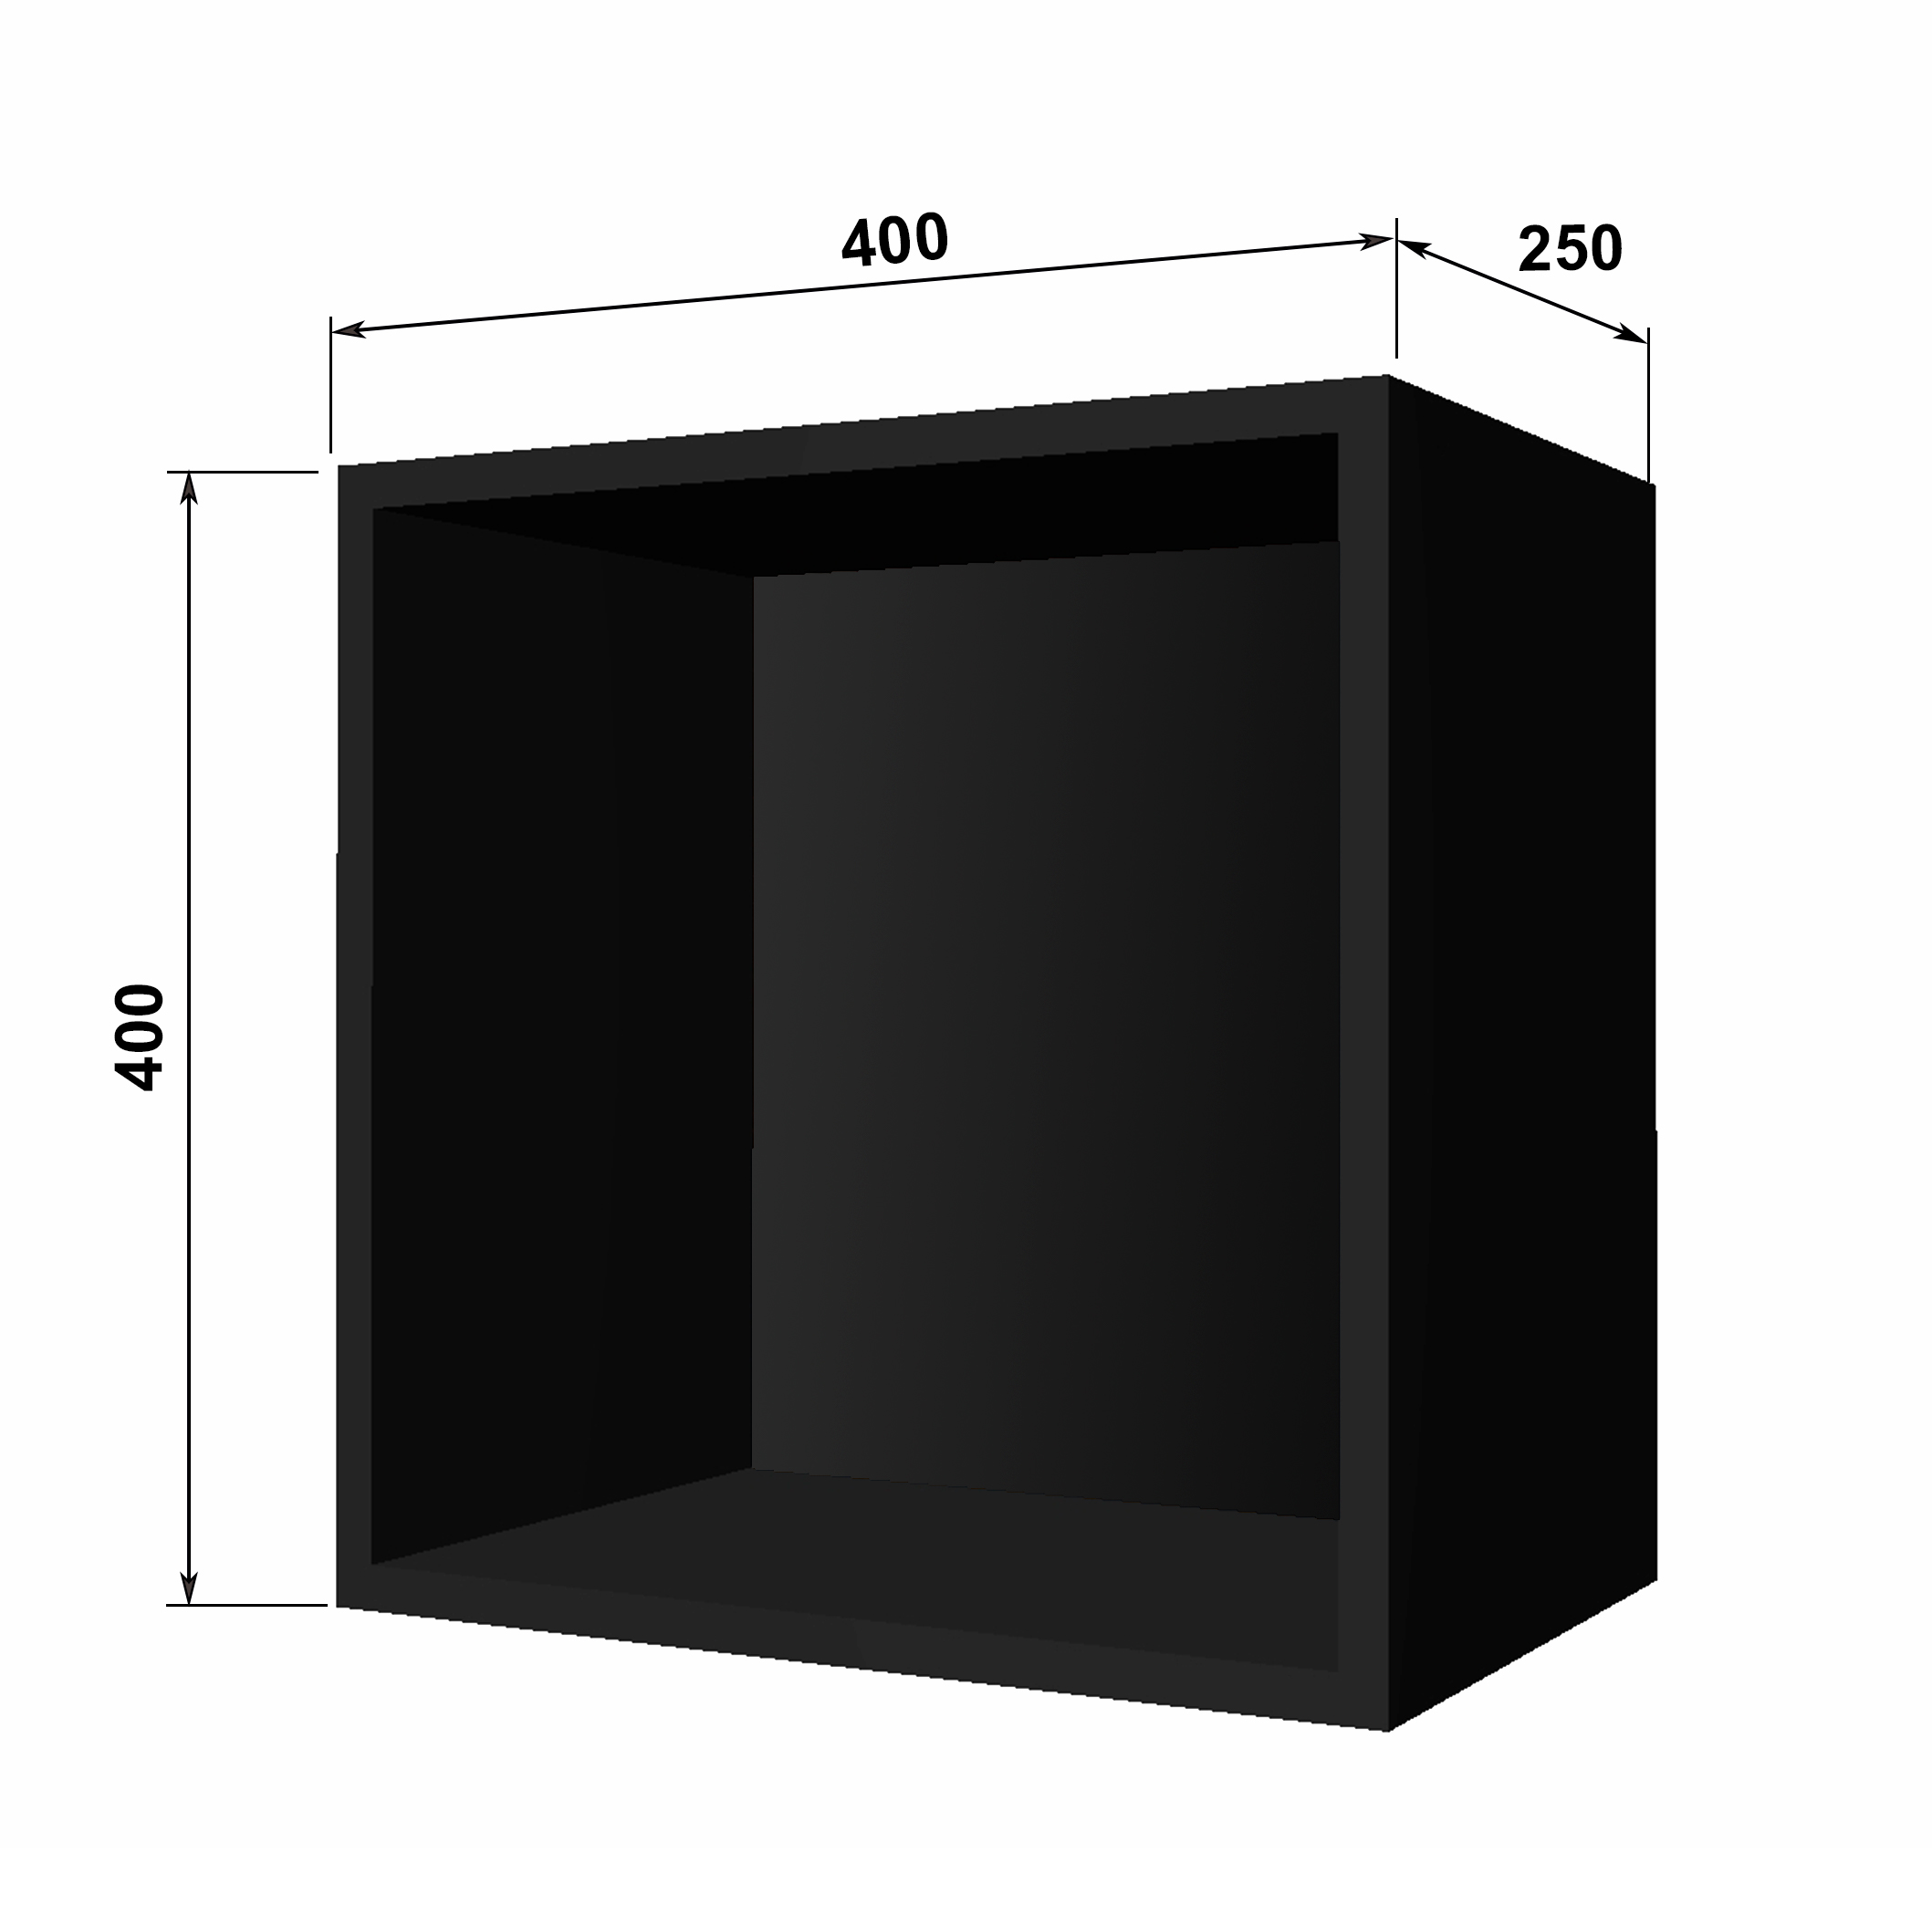 Полка 400мм х 400мм х 250мм, Корпус Черный, задняя панель Черная - Фото 1